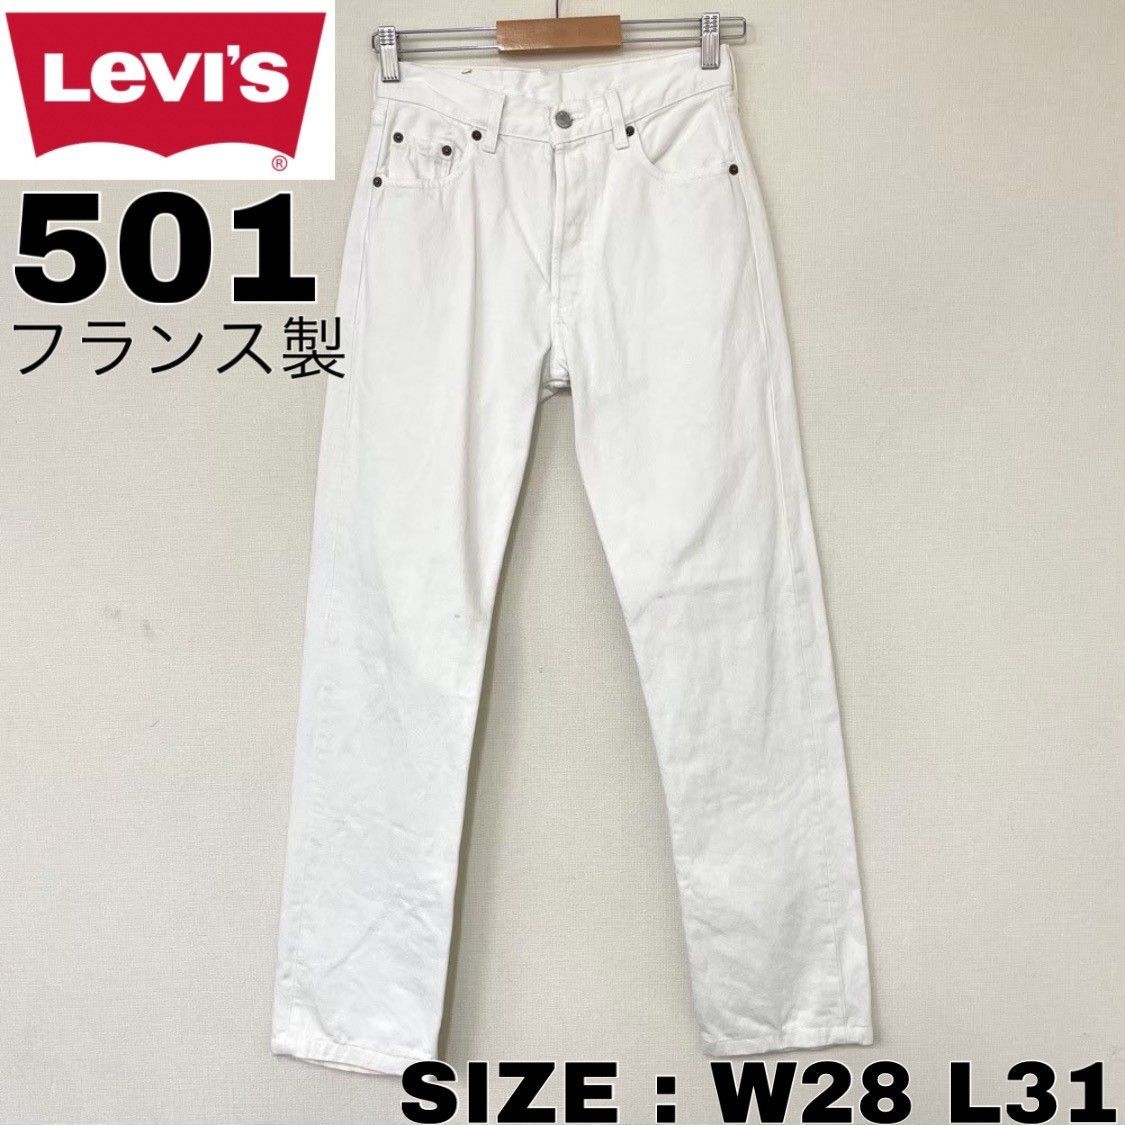 フランス製 リーバイス Levi's 501 デニム パンツ W28 L31 ホワイト